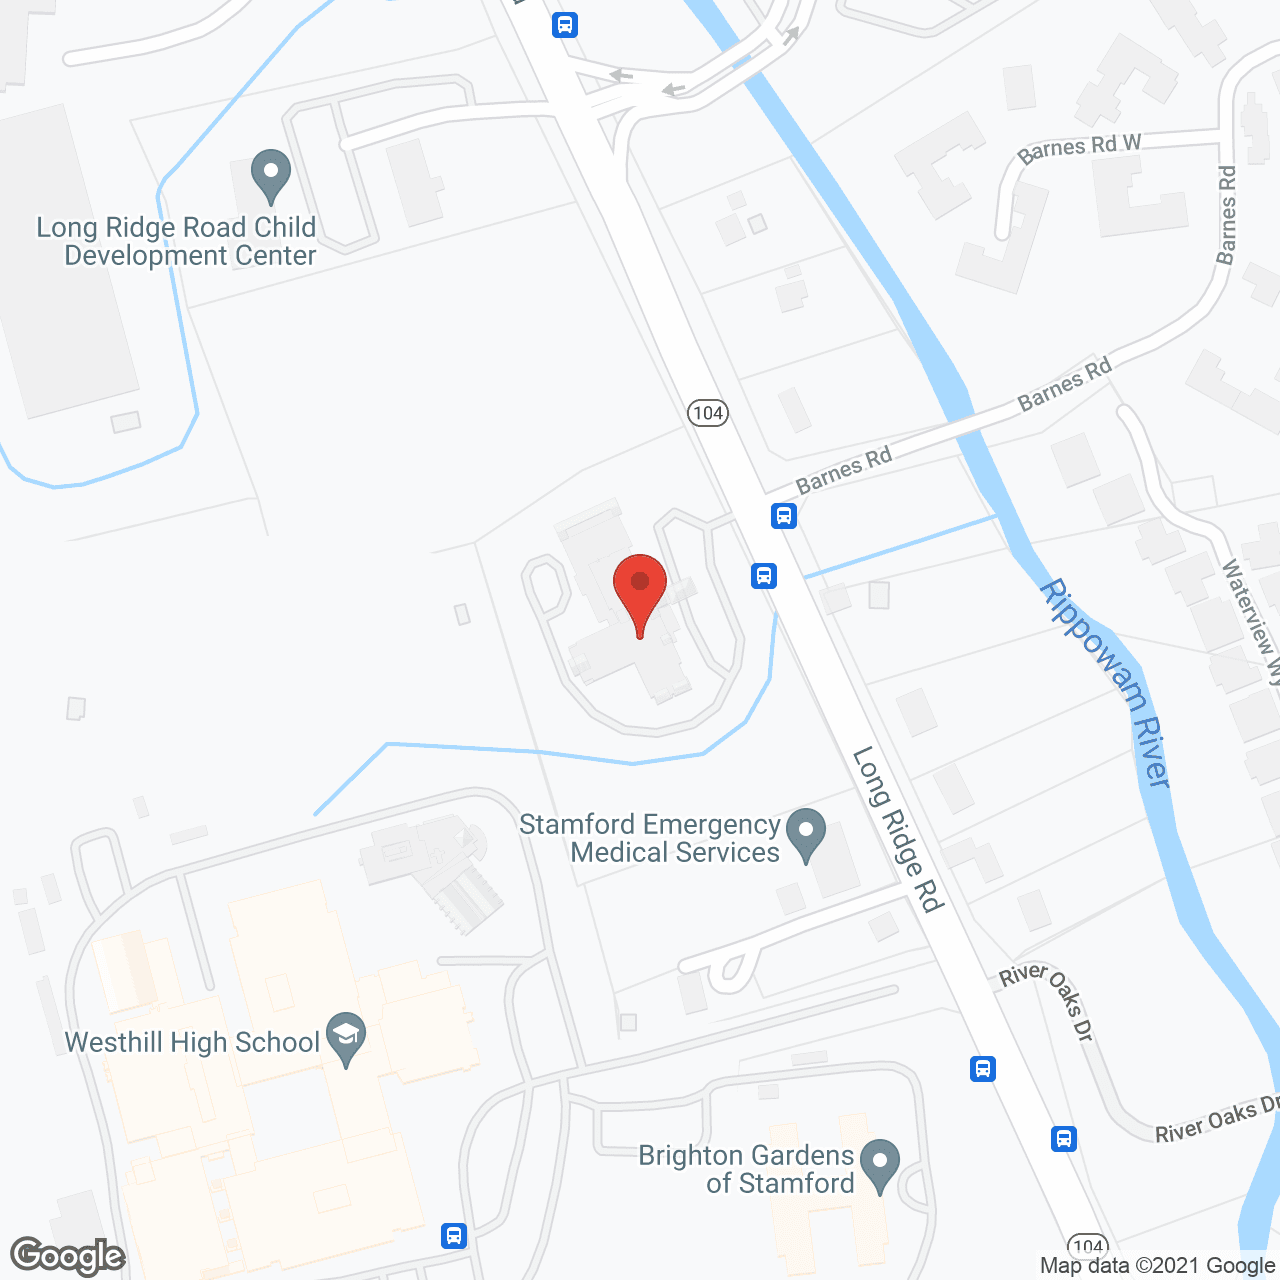 Long Ridge of Stamford in google map